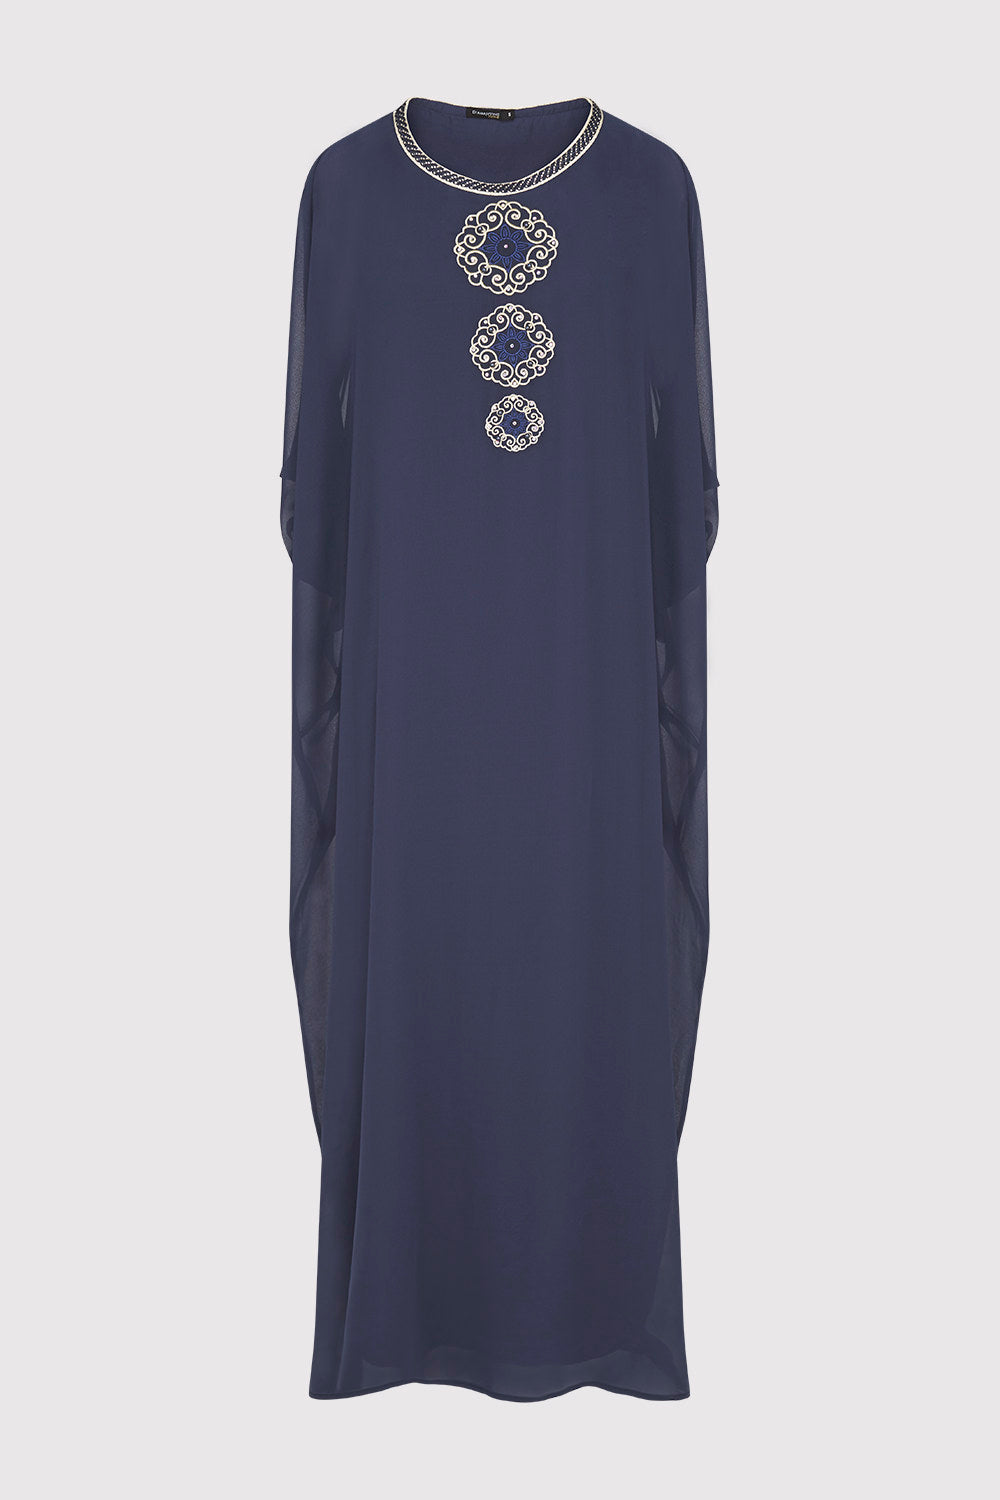 Kaftan Antoinette Embroidered Sleeveless Full-Length Split Sleeve Maxi Dress in Marine